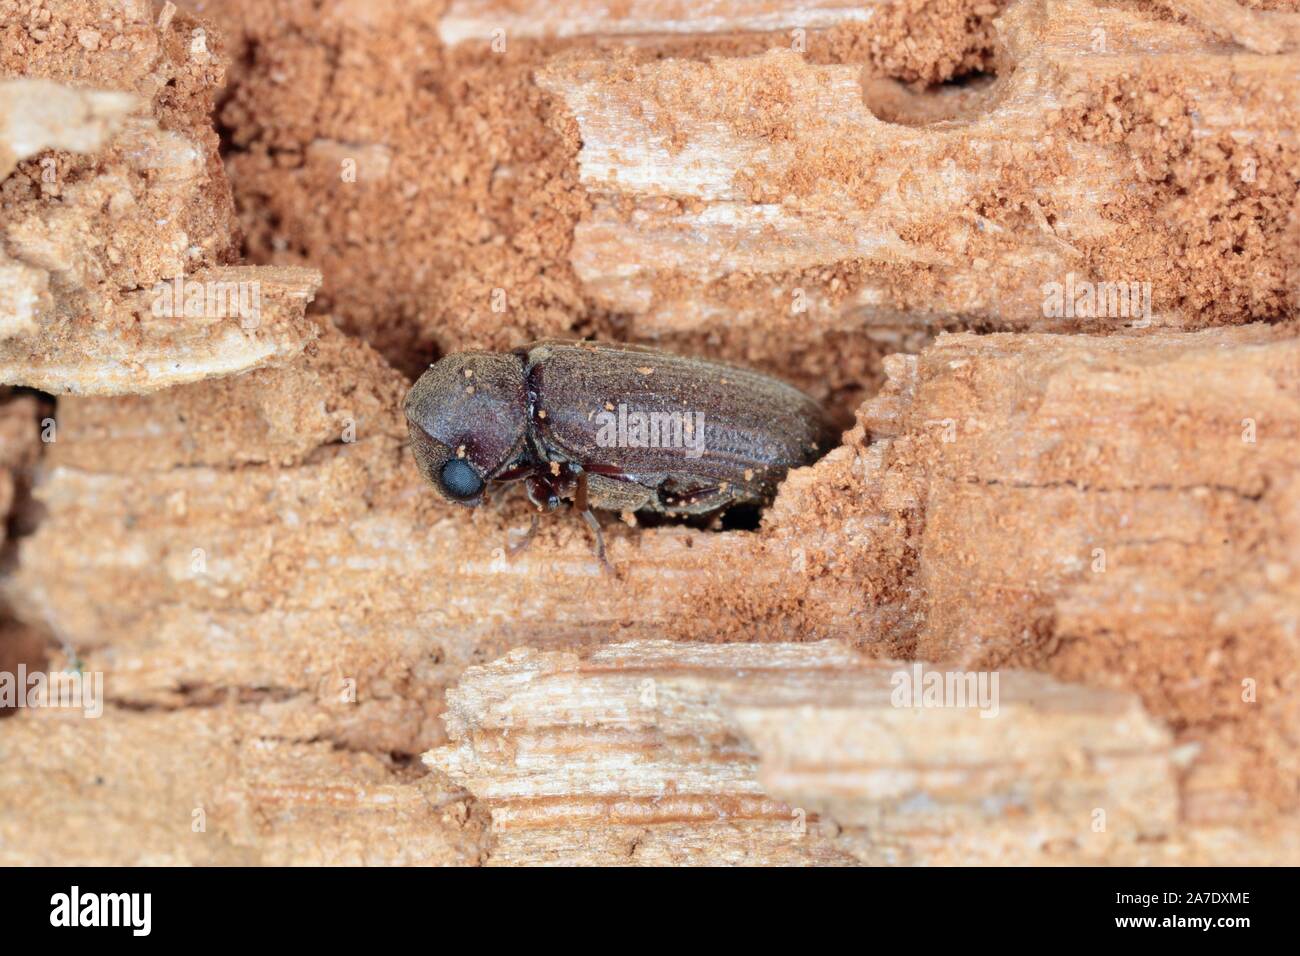 Woodboring beetle, legno borer, anobiidae su legno danneggiato, extreme close-up Foto Stock